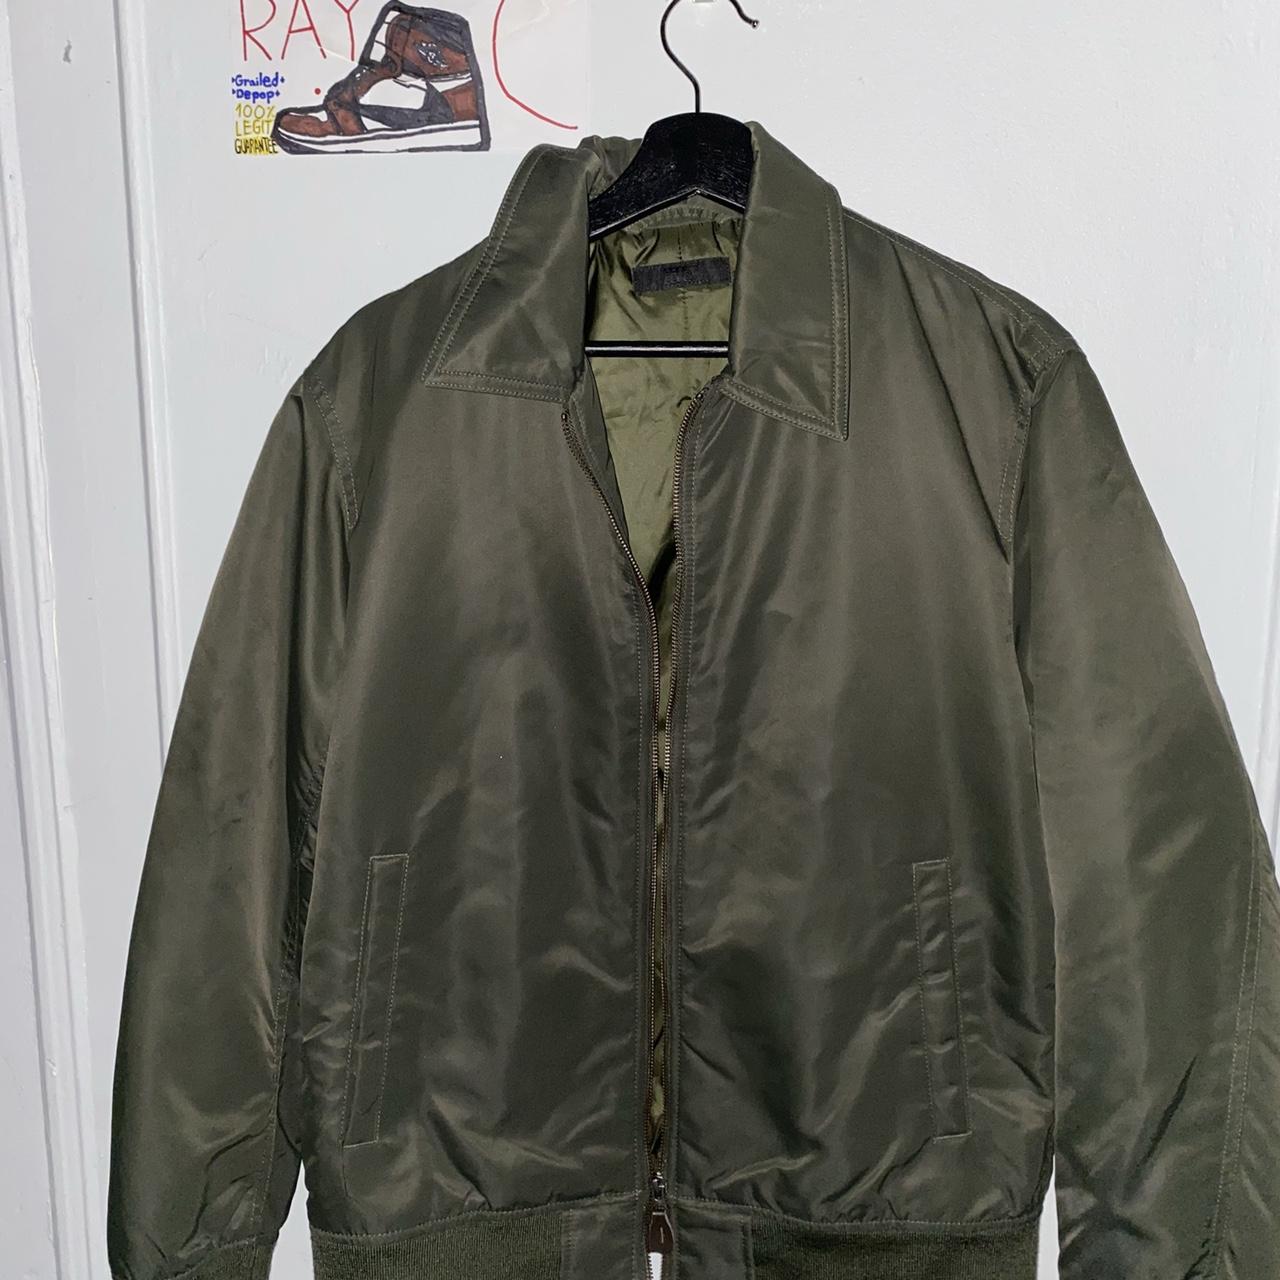 Perfect DEADSTOCK vintage bomber jacket - Depop